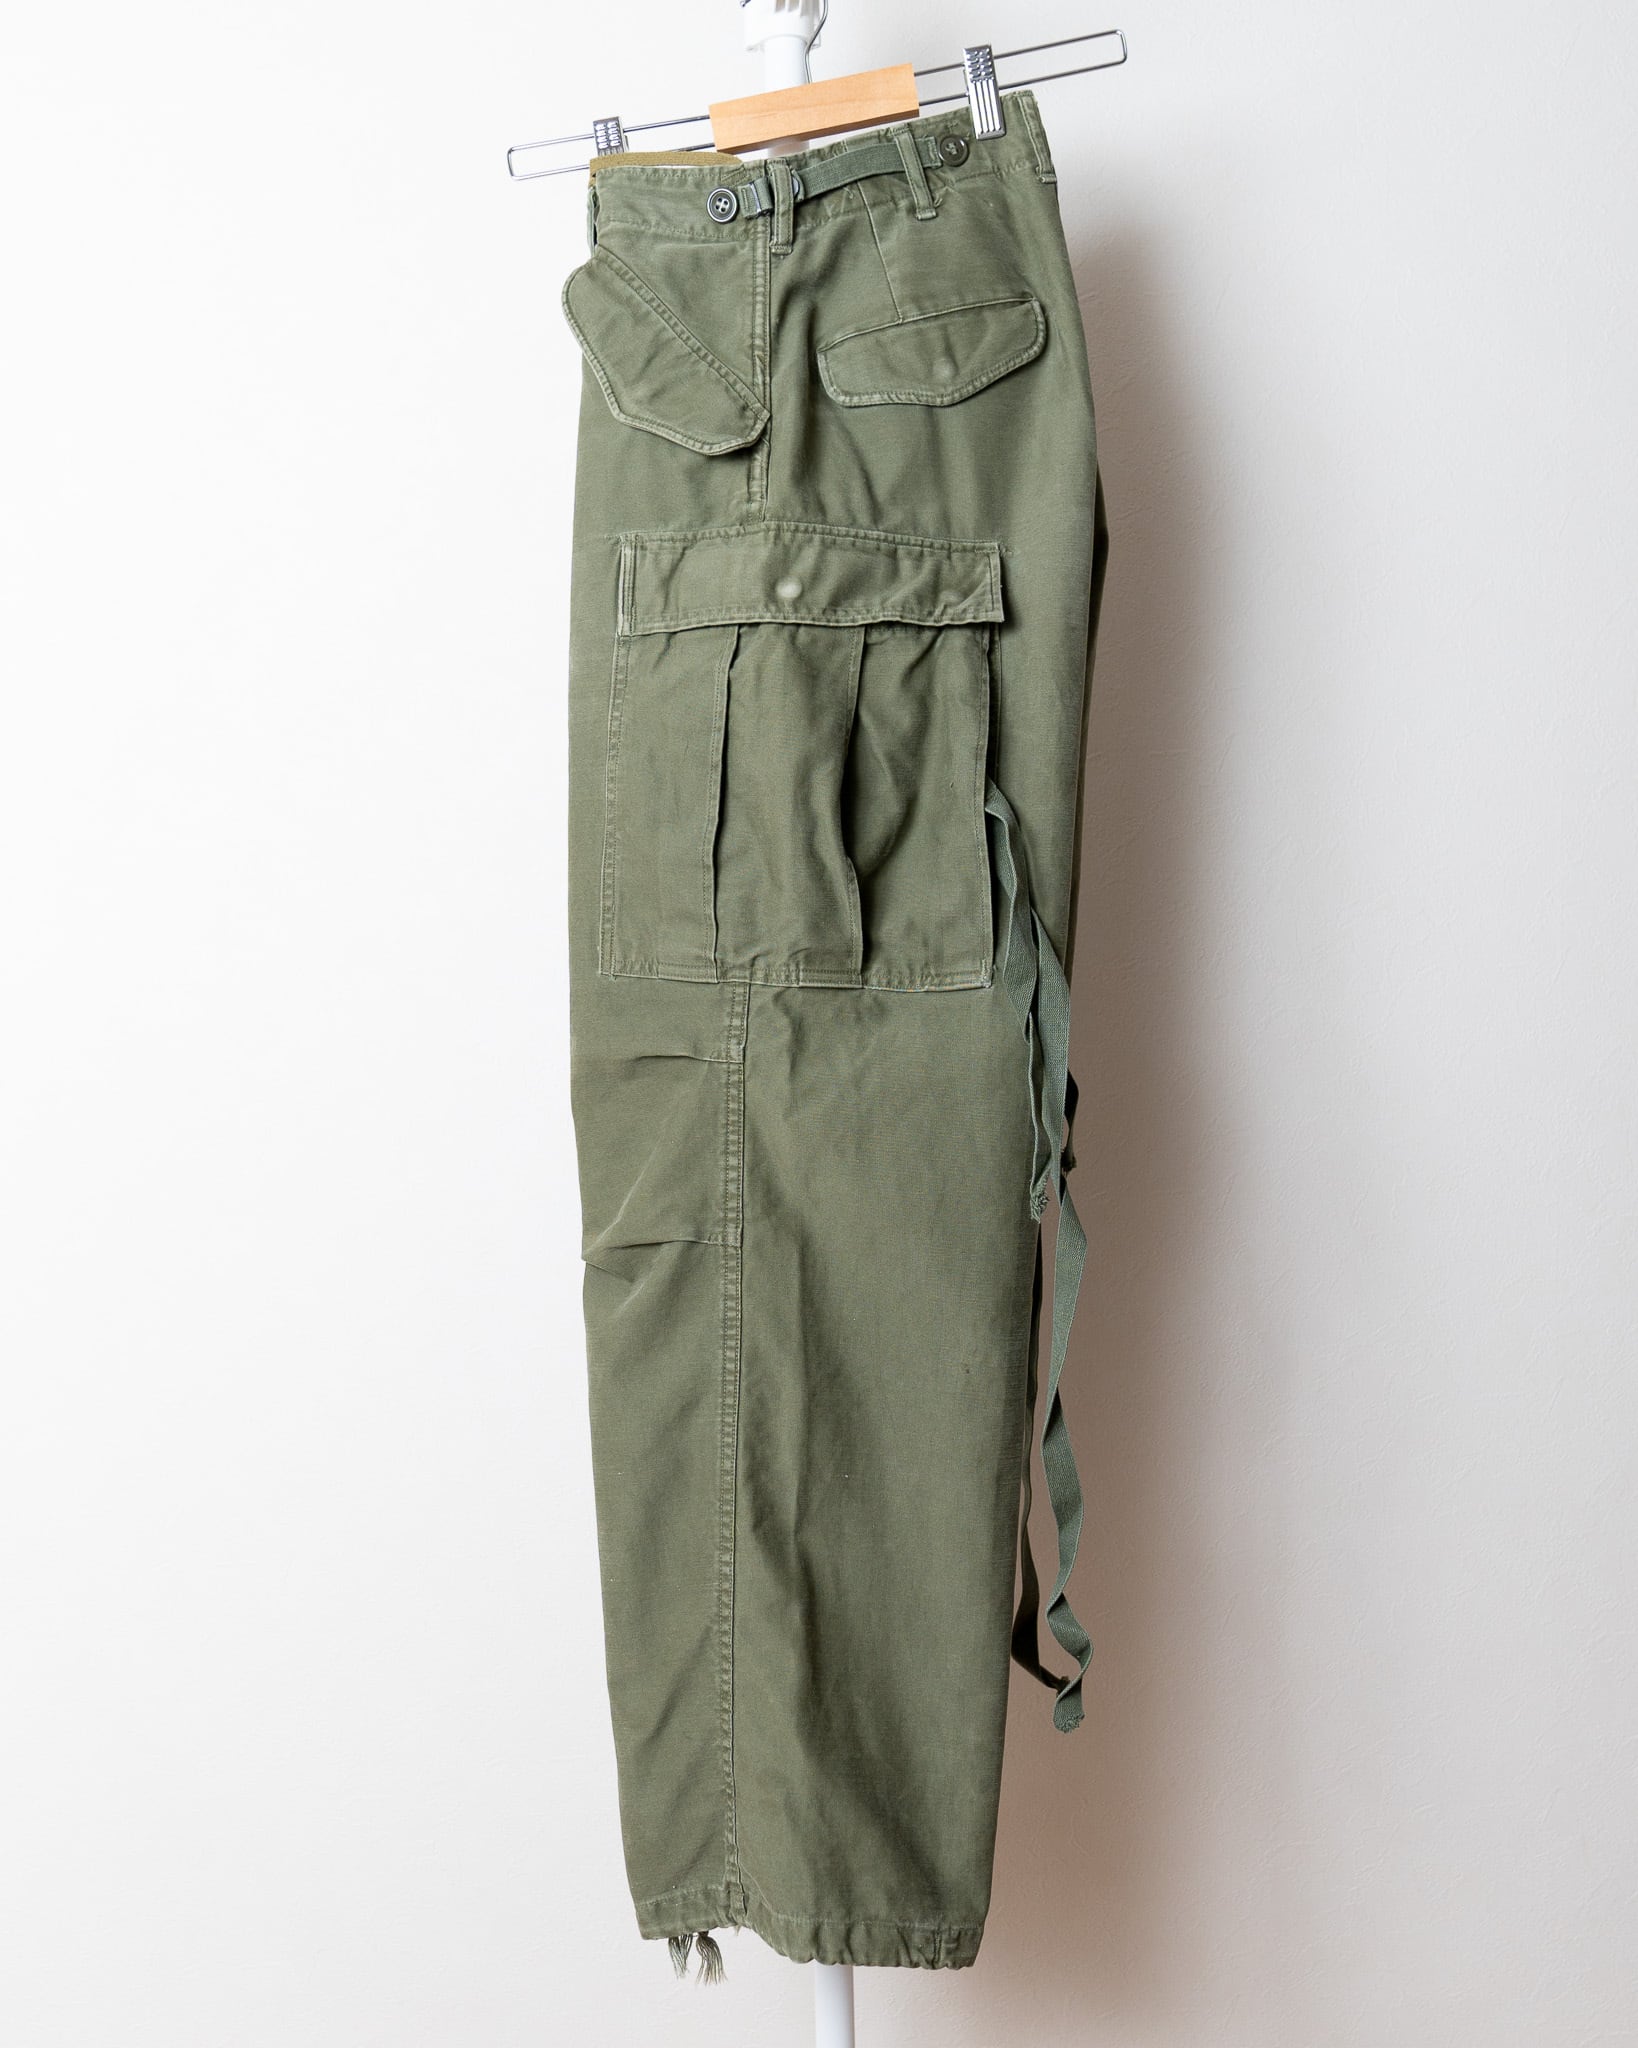 XS-R】U.S.Army M-51 Field Trousers 